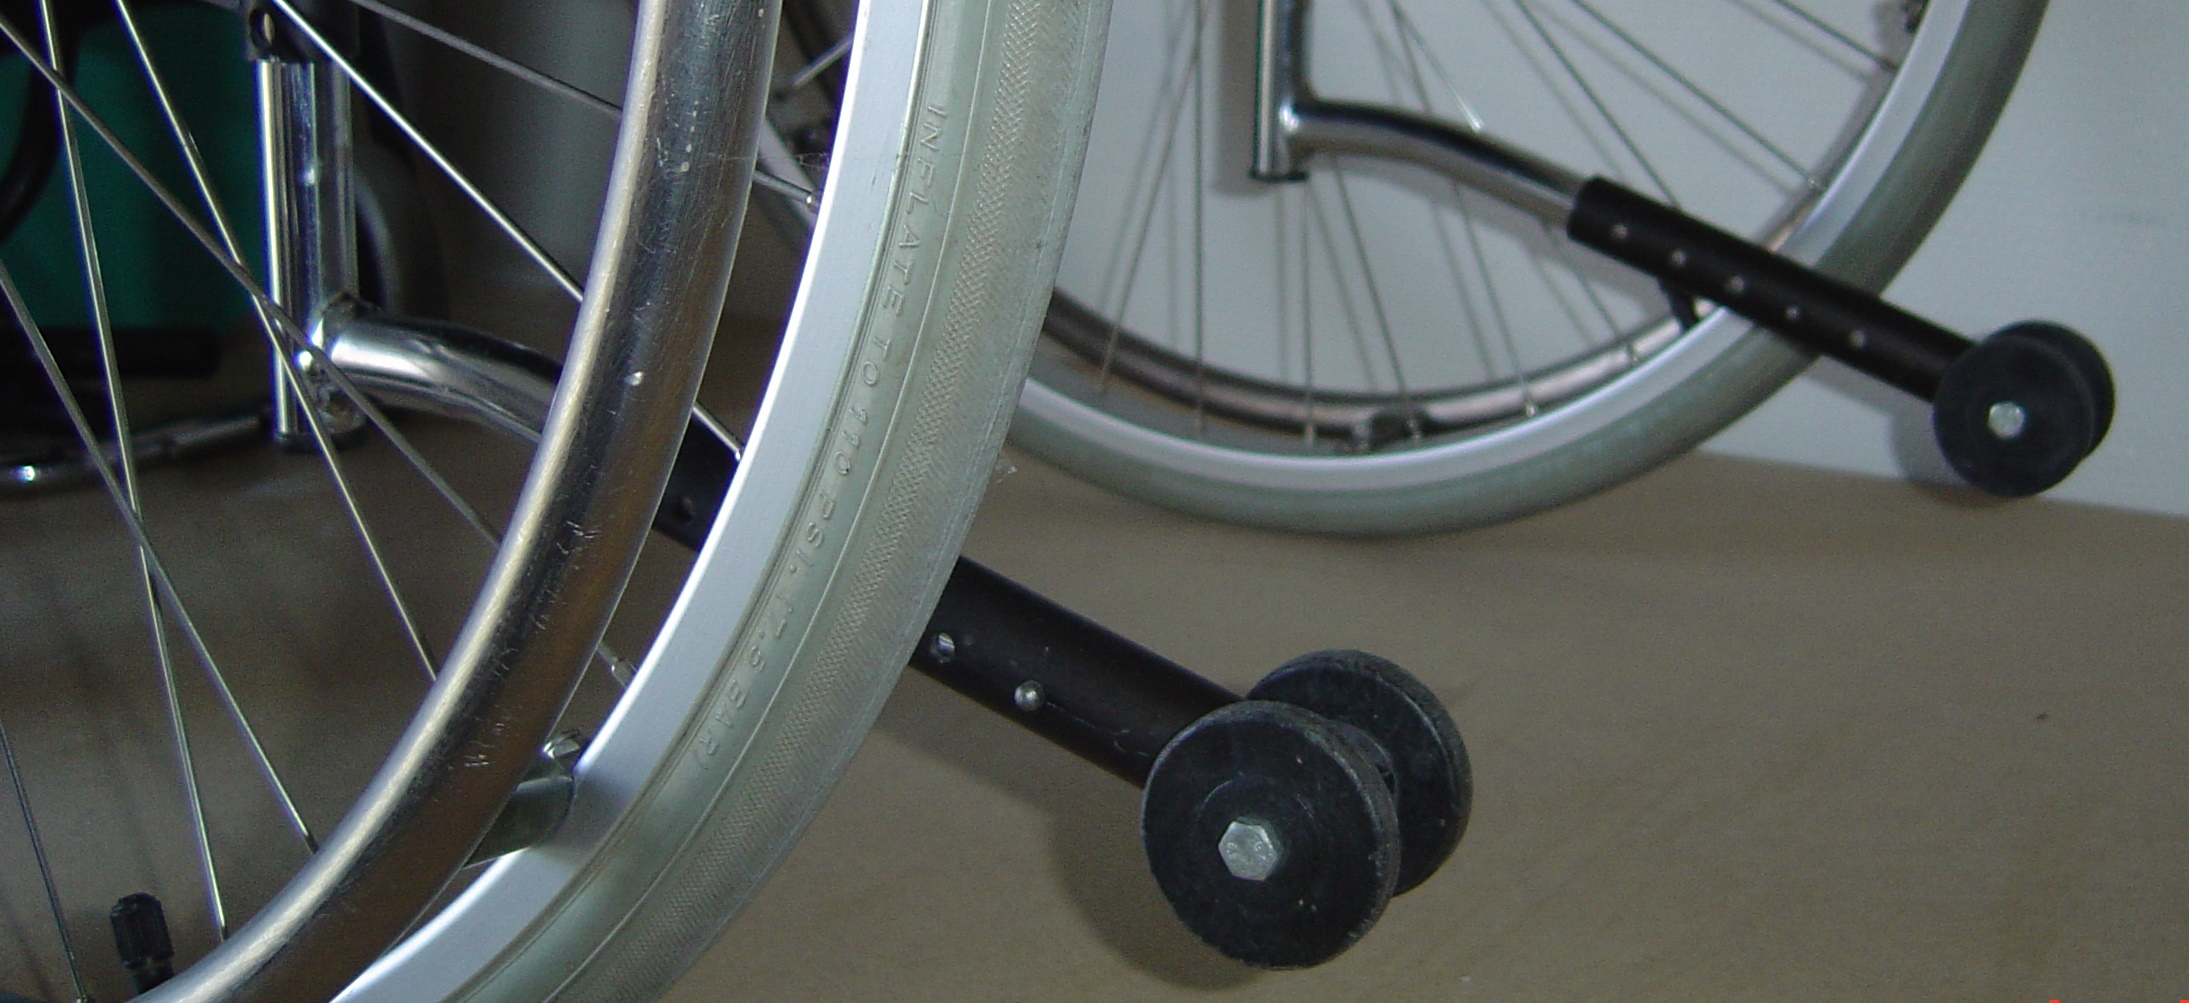 Billede af anti-tip-støtte på kørestol